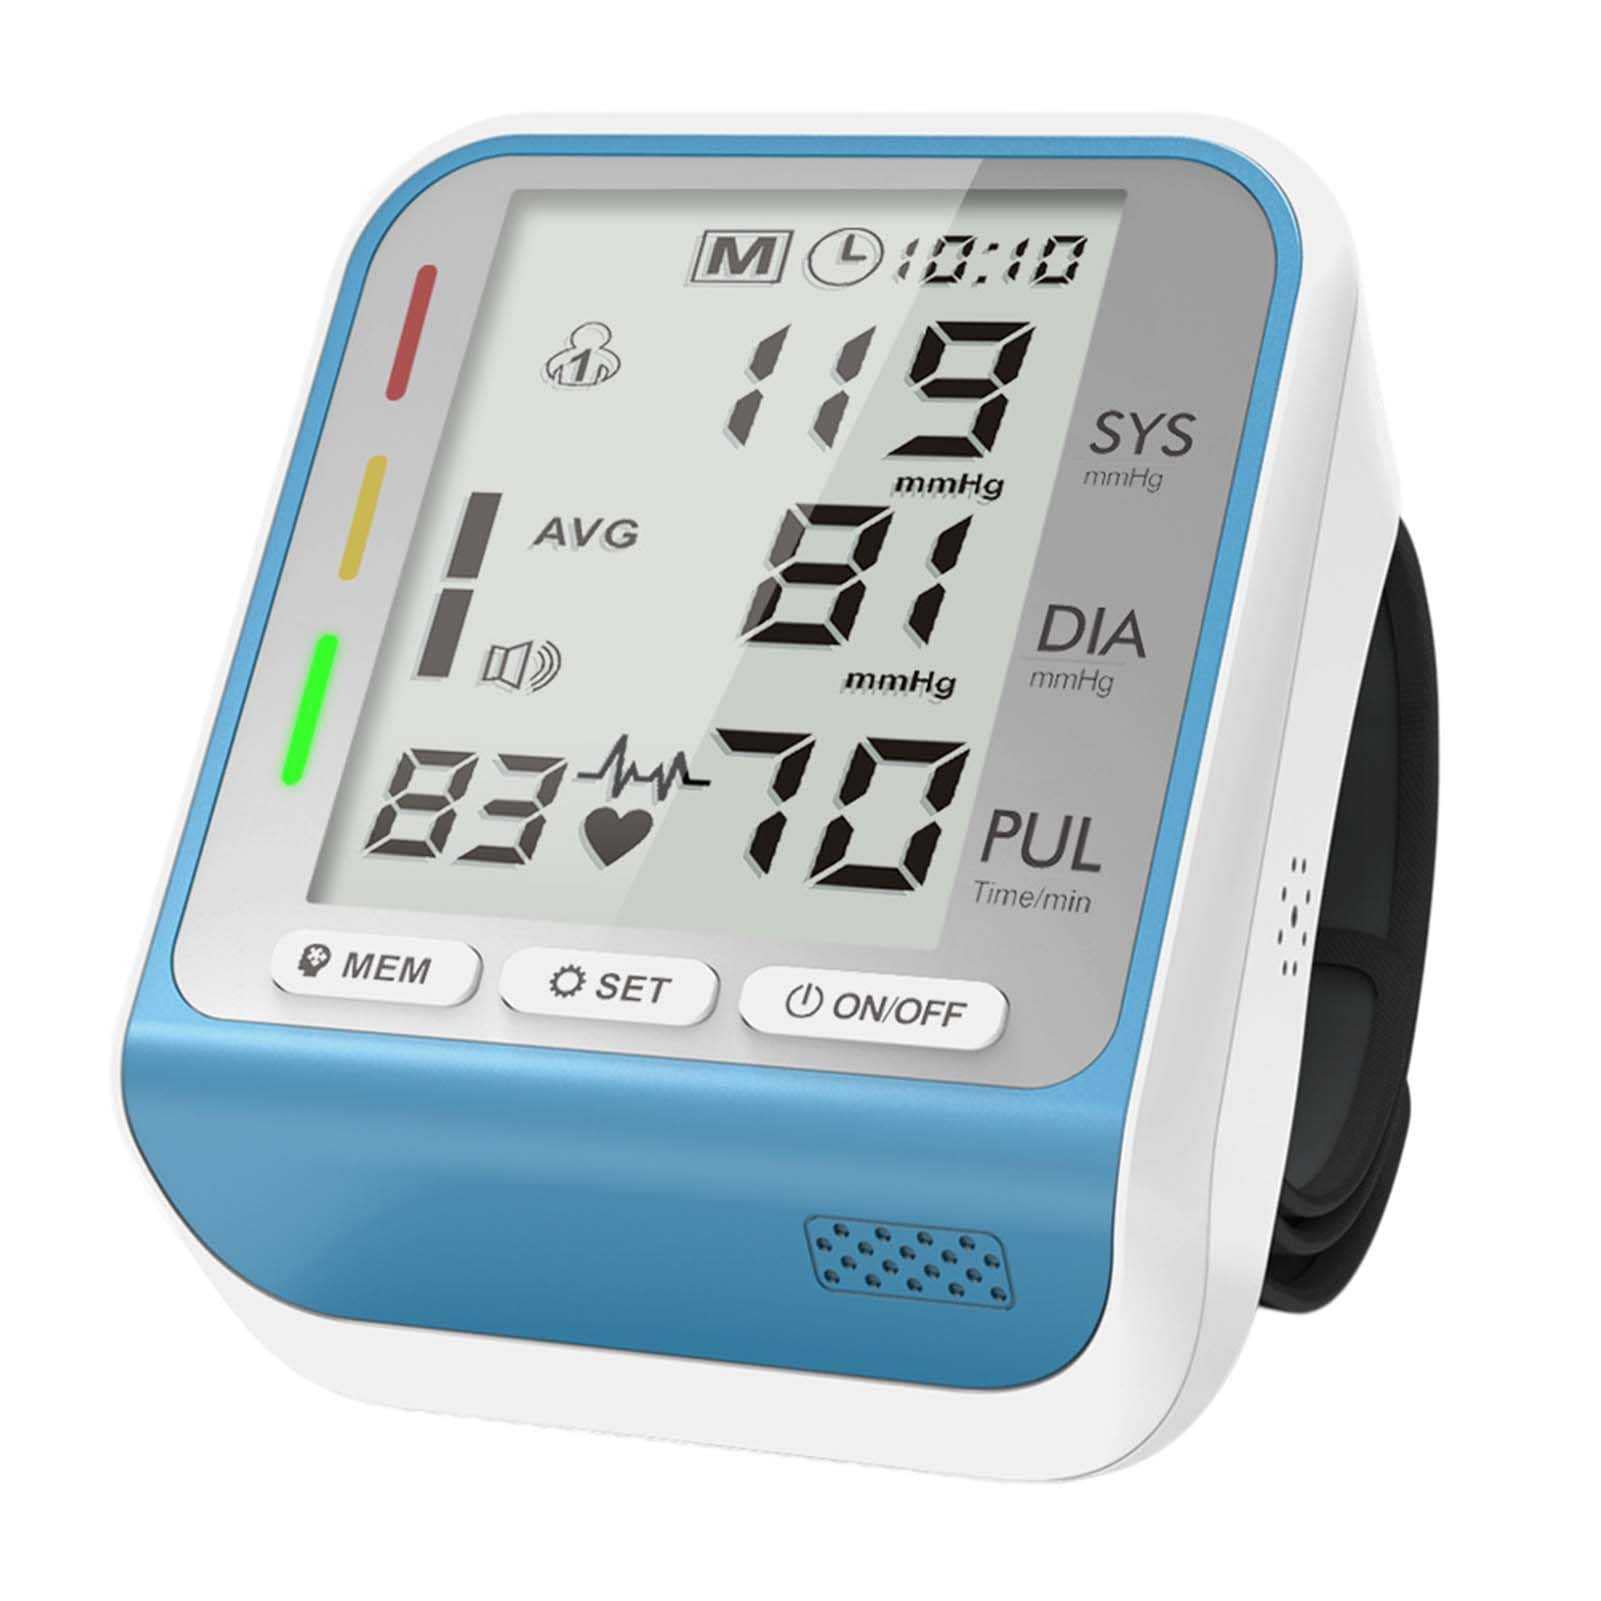 Vollautomatisches Smart Wrist Electronics Blutdruckmessgerät, Großbildanzeige, Herzfrequenzüberwachung, intelligenter Druck, mit dreifarbiger Blutdruck-Statusanzeige (Blau)